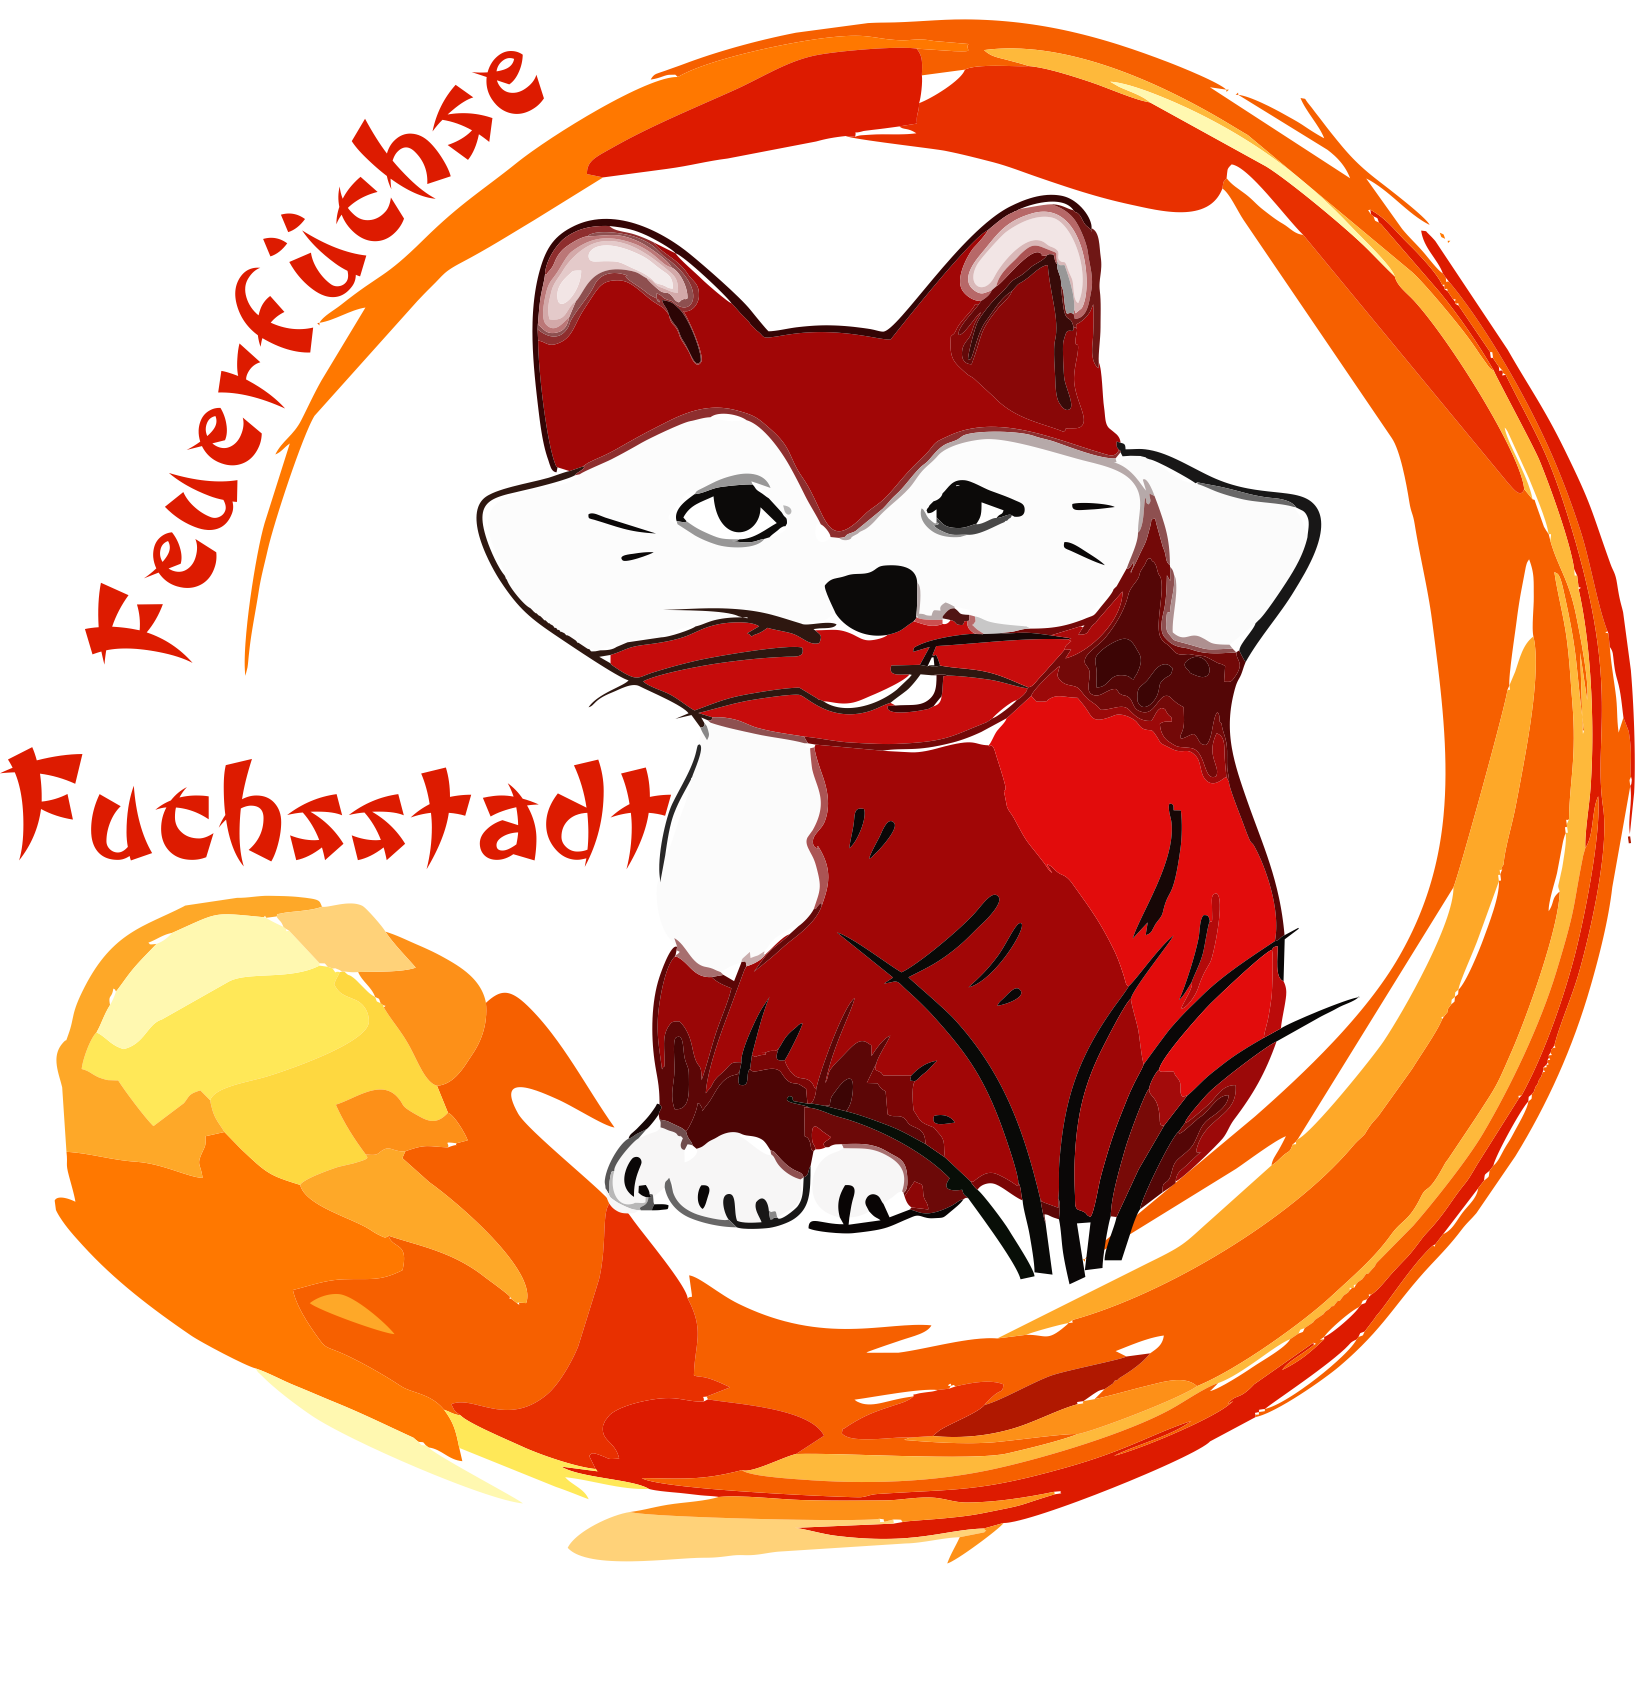 Fuchsstadter Feuerf¨uchse